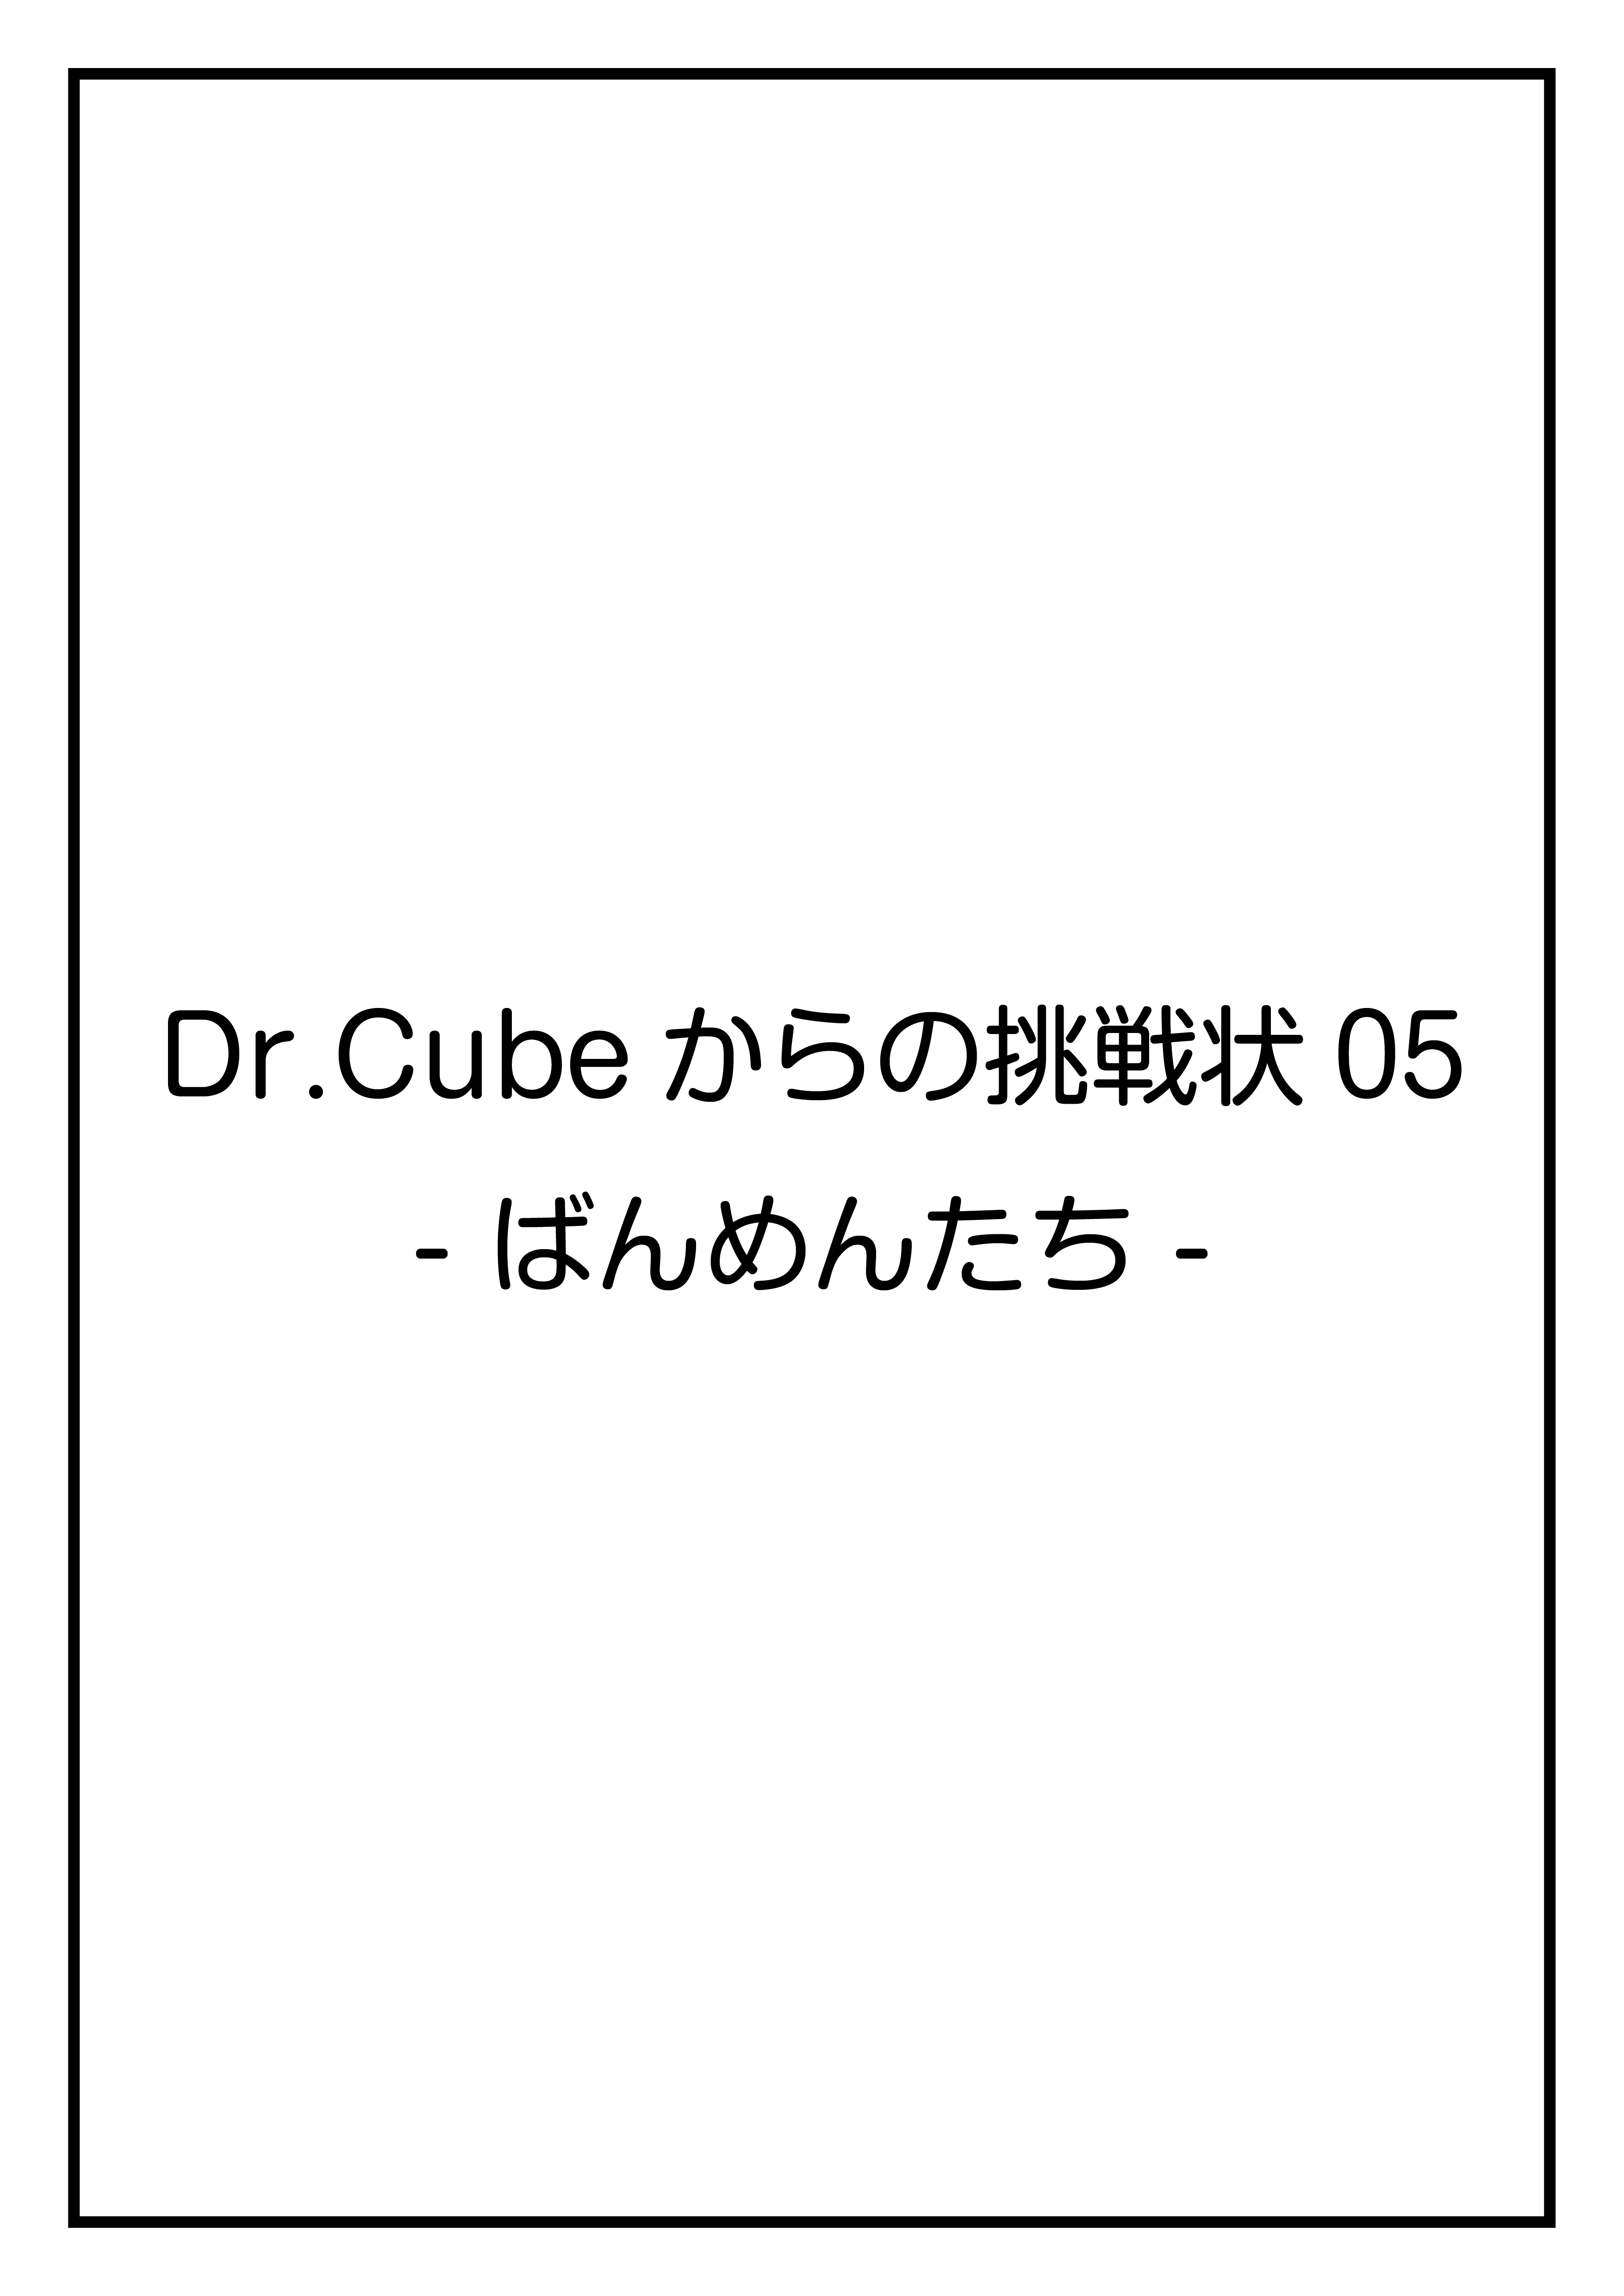 CubeFactory ✕ テクニコテクニカ『Dr.Cubeからの挑戦状05 -ばんめんたち-』体験型謎解きゲーム